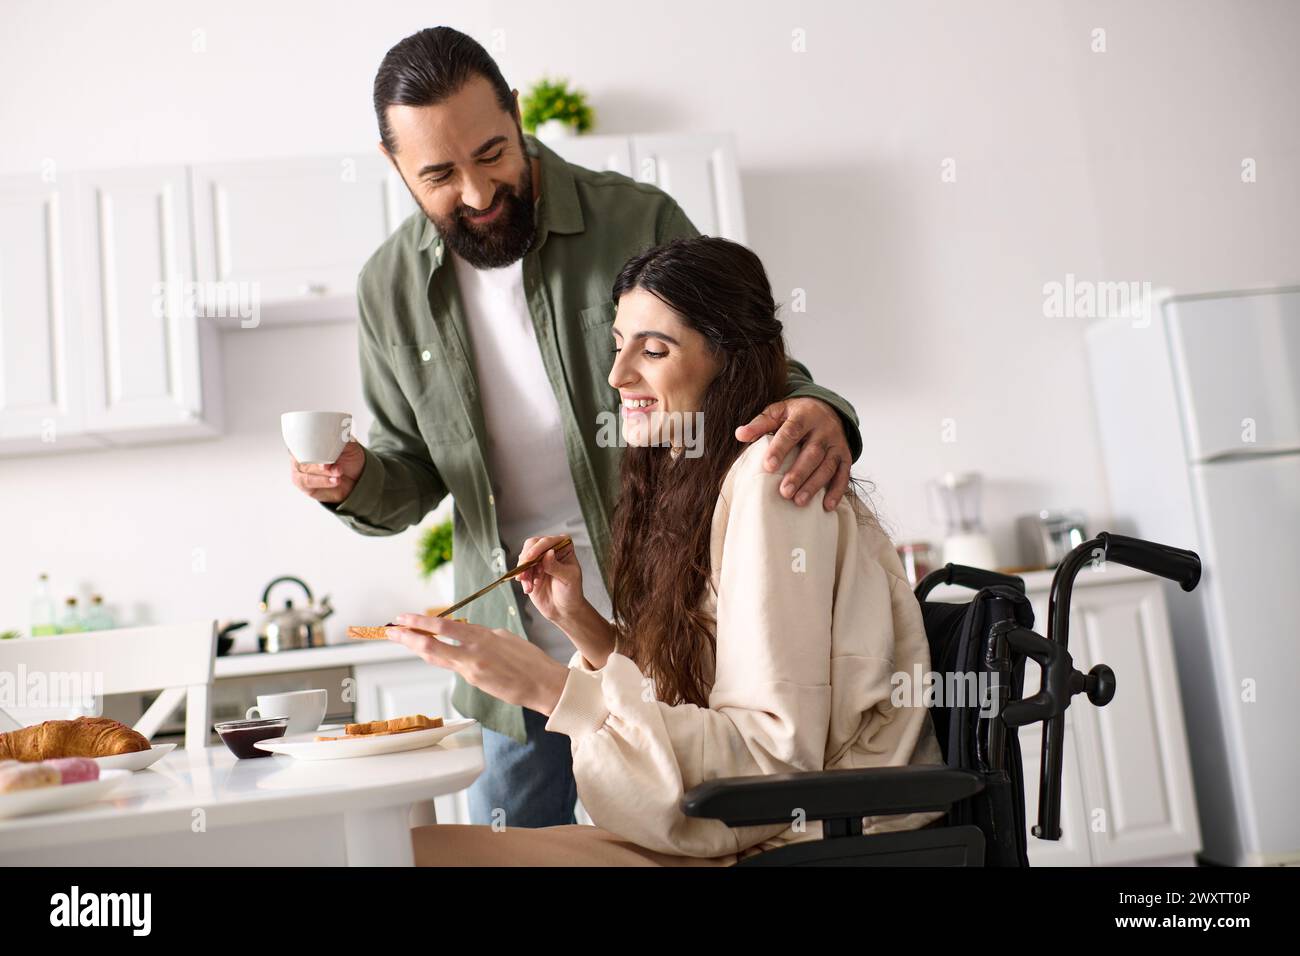 bella donna allegra con disabilità in sedia a rotelle che fa colazione con il marito barbuto Foto Stock